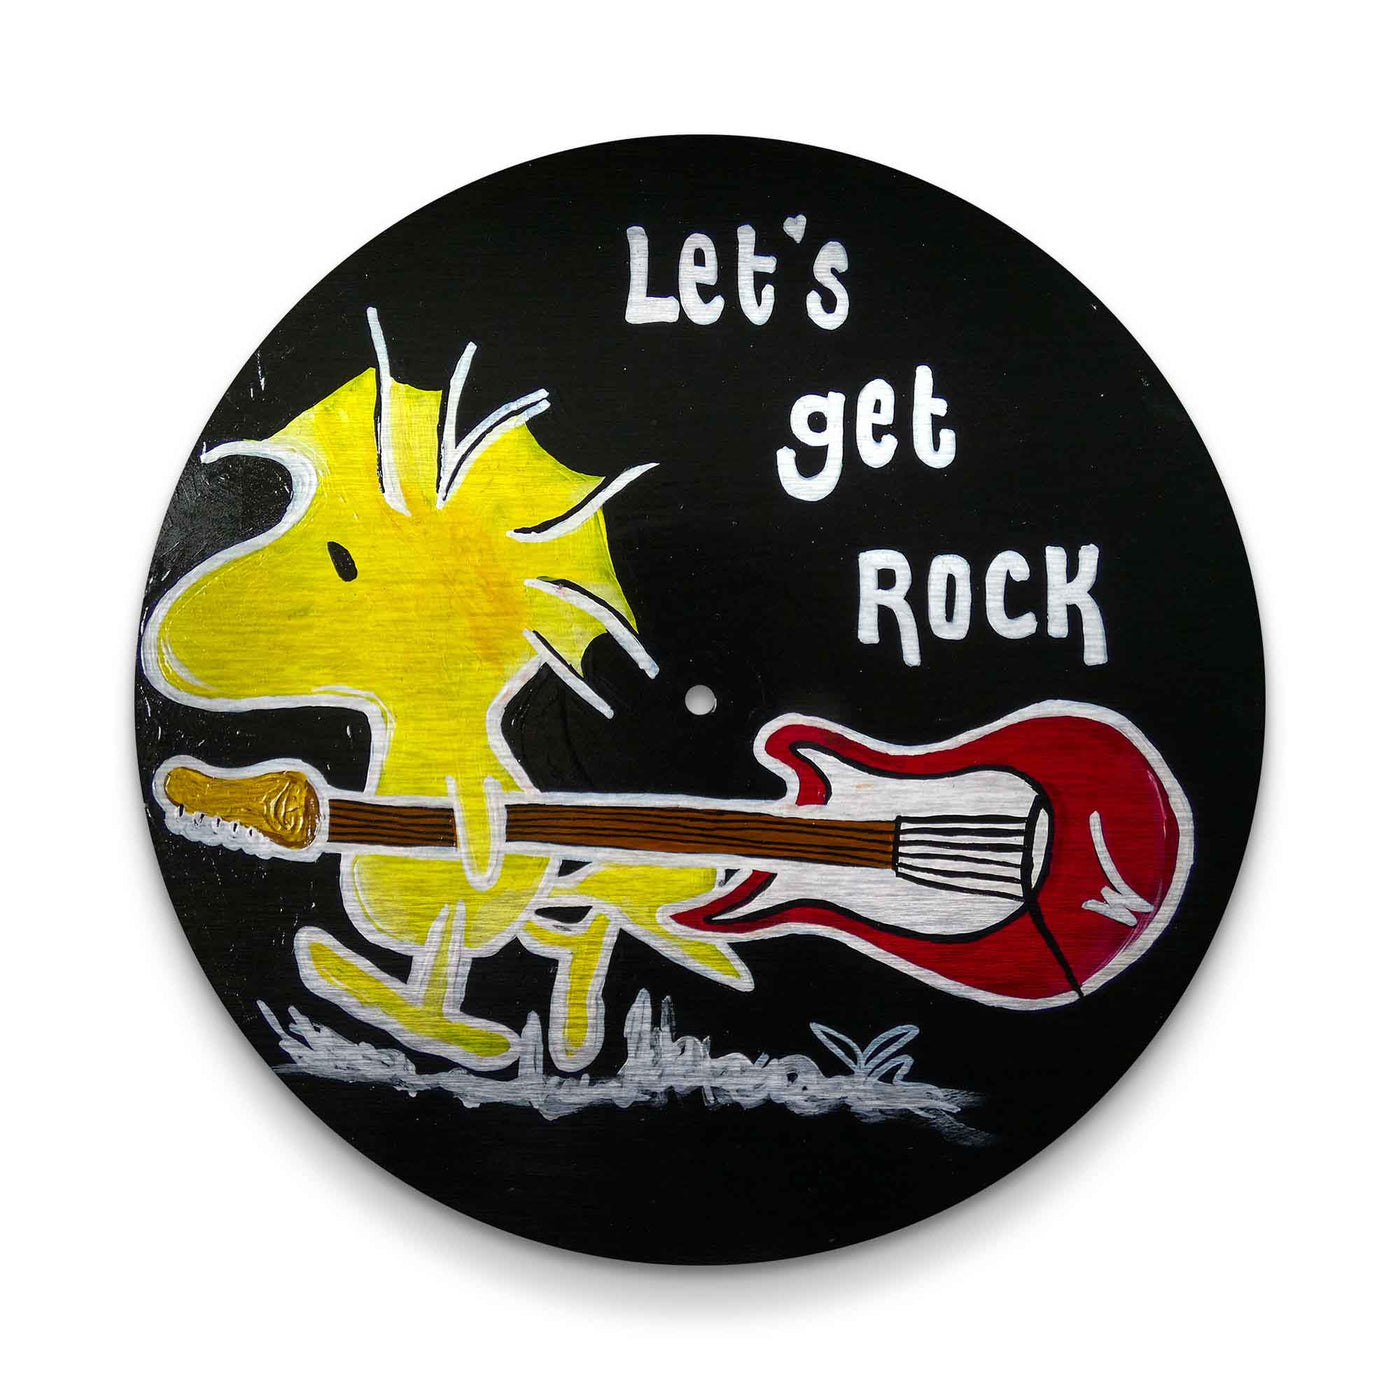 Let's get rock